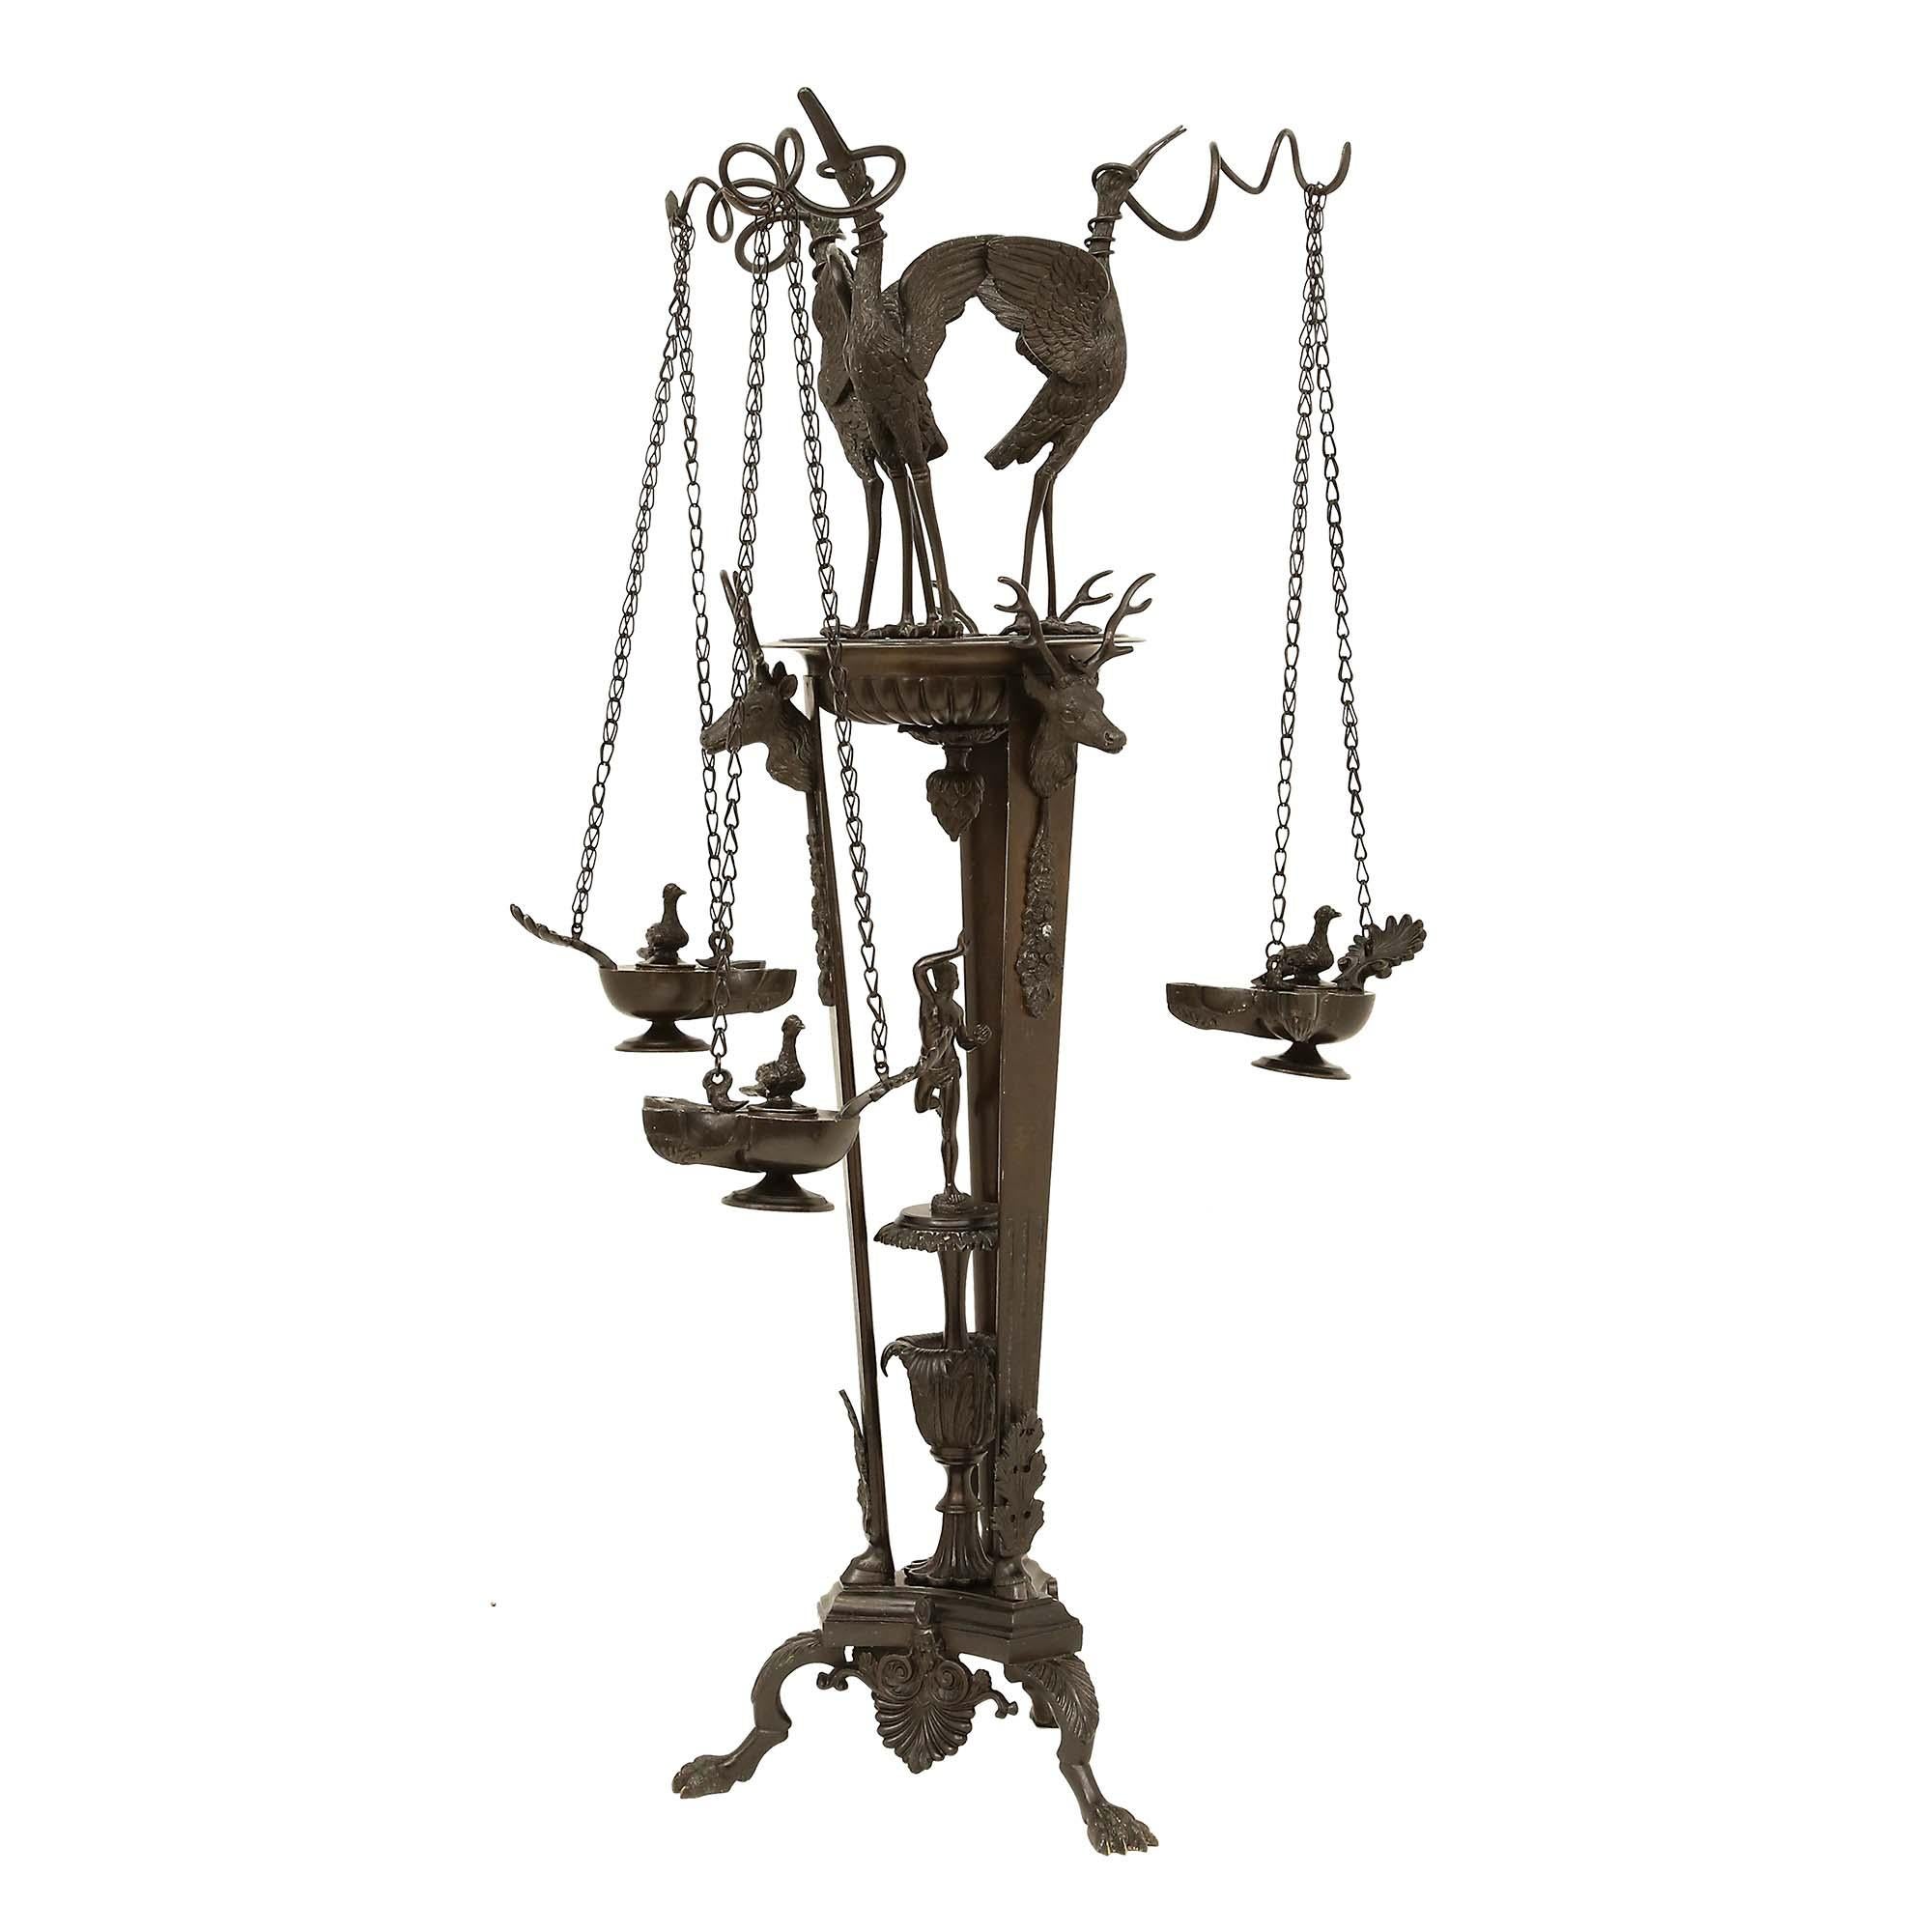 Lampe à huile sur pied en bronze patiné, extrêmement décorative, datant de la Renaissance française du 19e siècle. Le support a une base tripode avec des palmettes, et des côtés concaves, centrés par une urne avec une plateforme et une figure